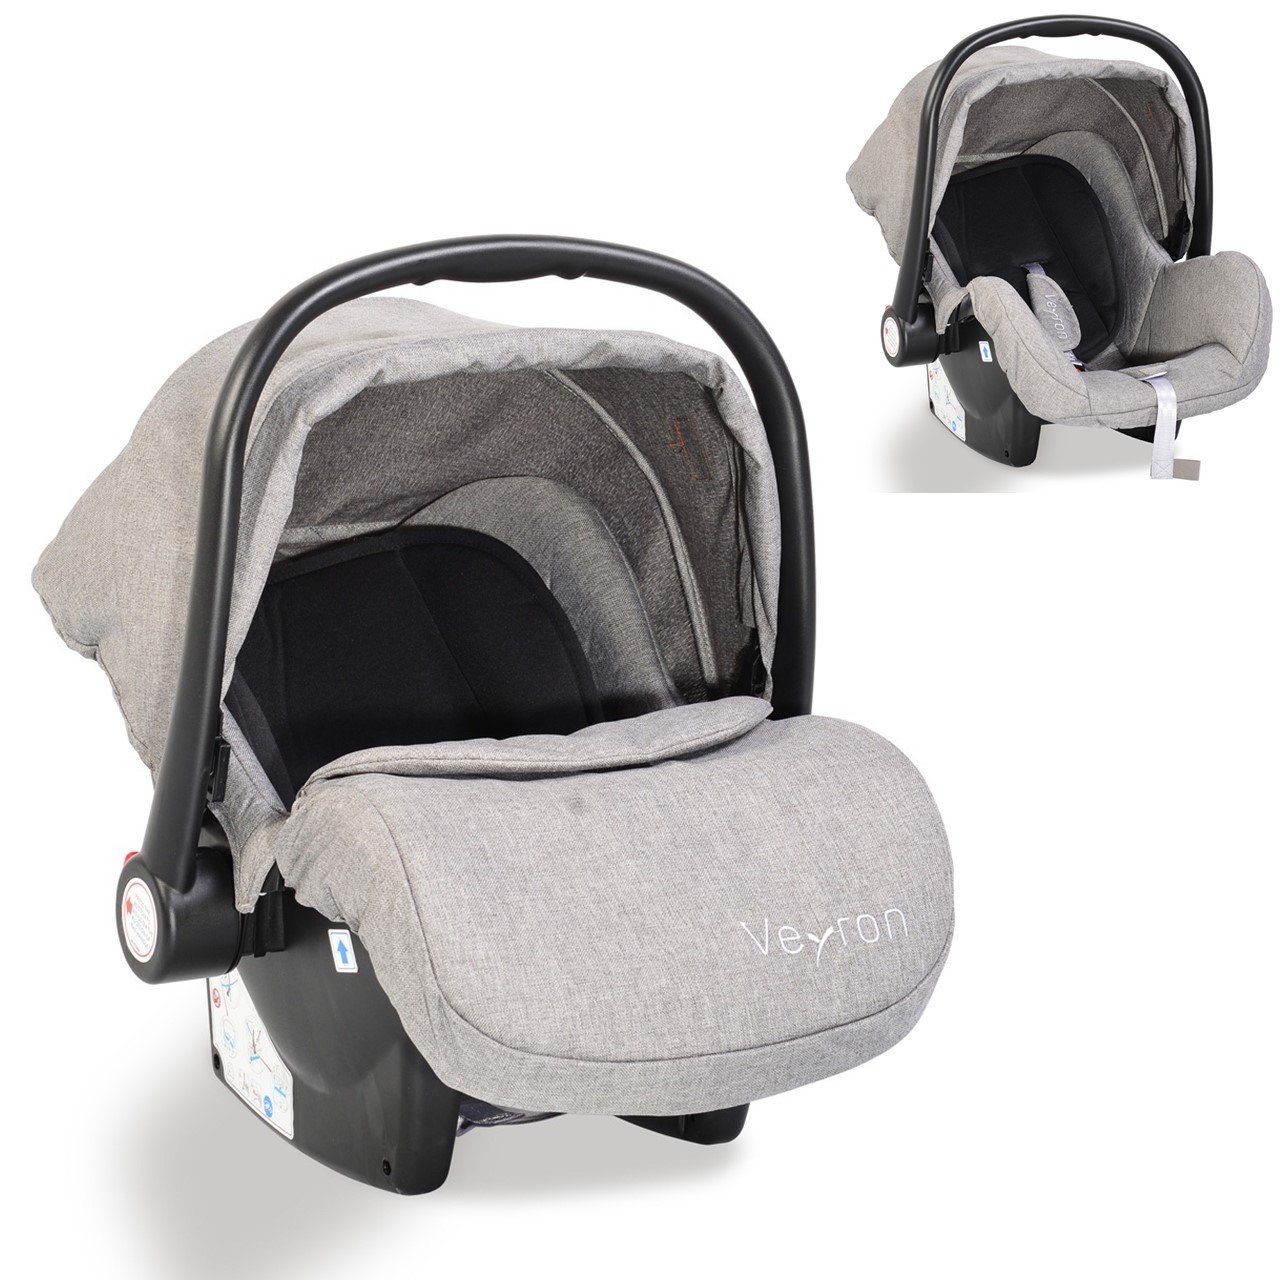 0+, (0 bis: kg, Babyschale Sonnendach, Veyron -13 Adapter hellgrau 13 kg) Kindersitz, Gruppe Moni Babyschale